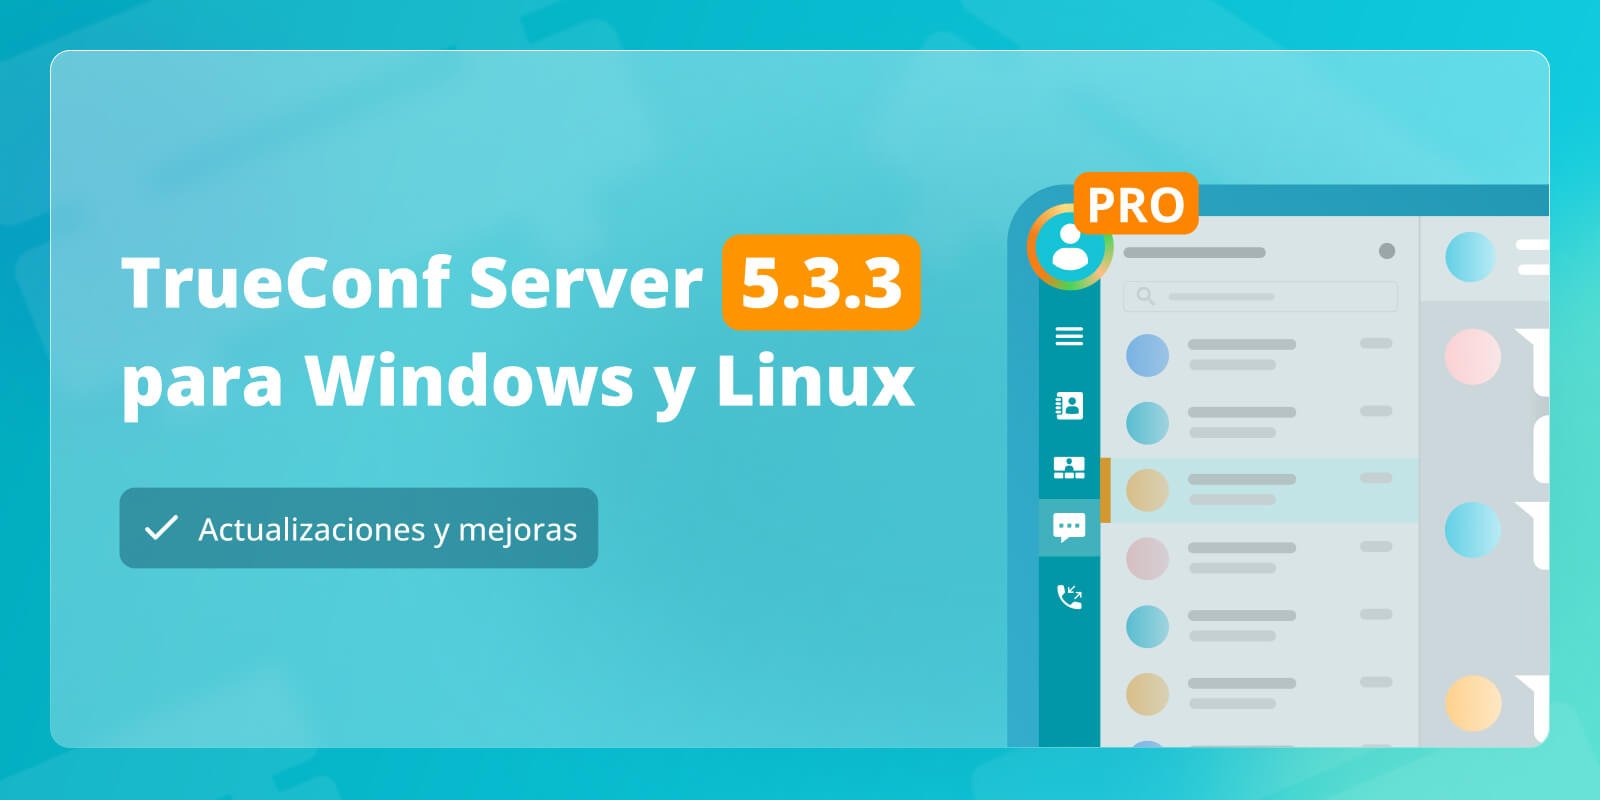 TrueConf Server 5.3.3: actualizaciones y mejoras 6